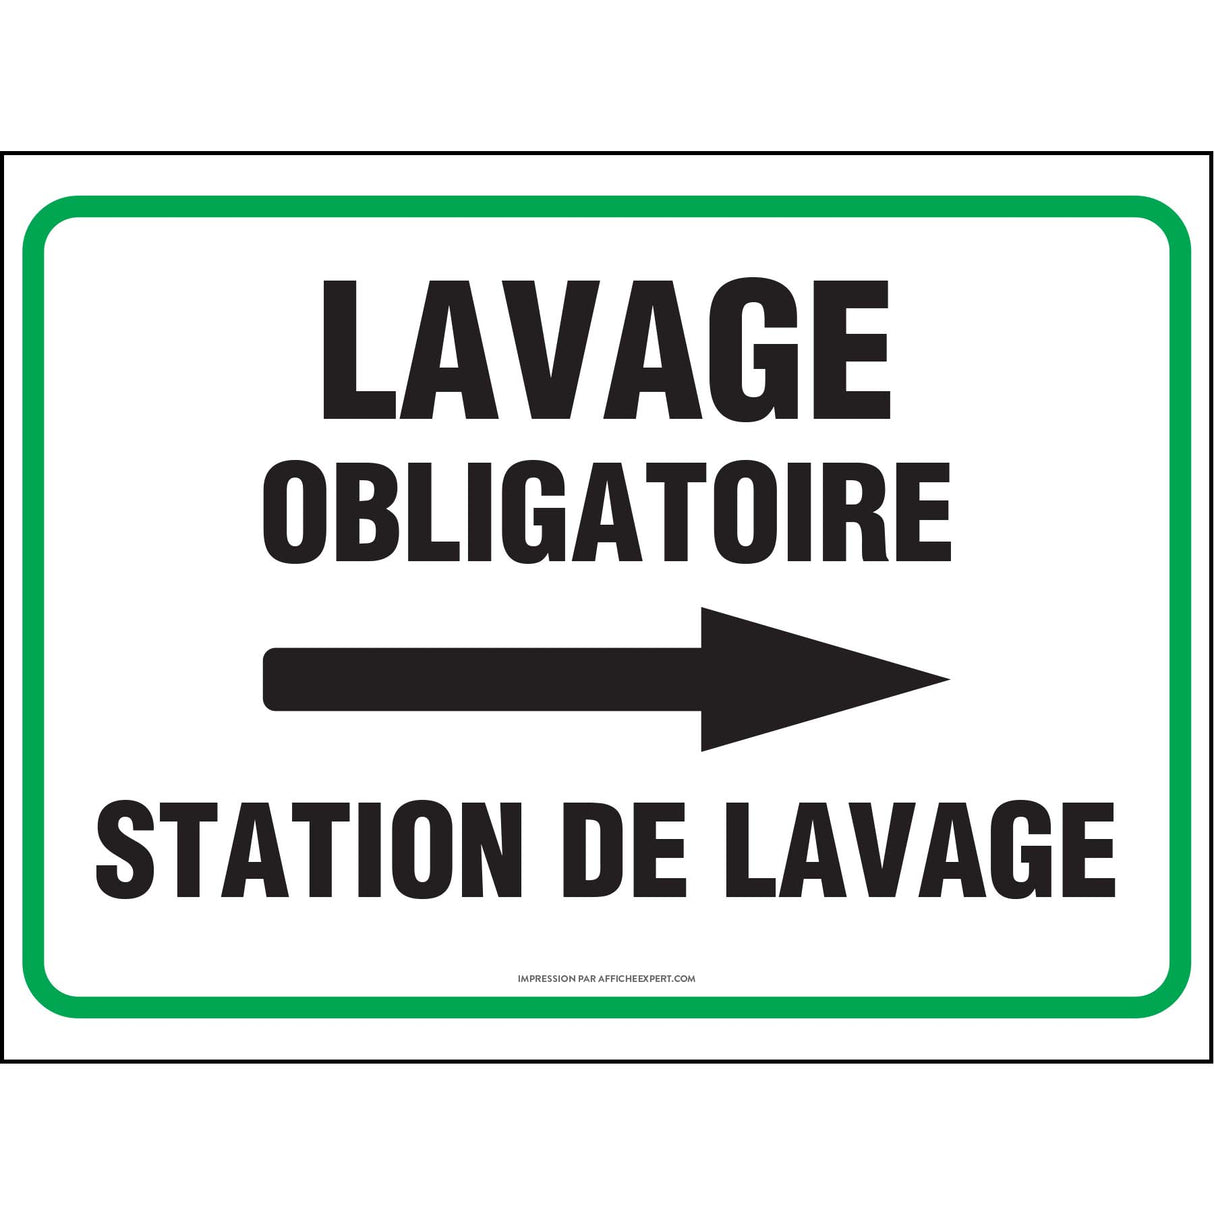 Lavage obligatoire - Station de lavage (Flèche droite)